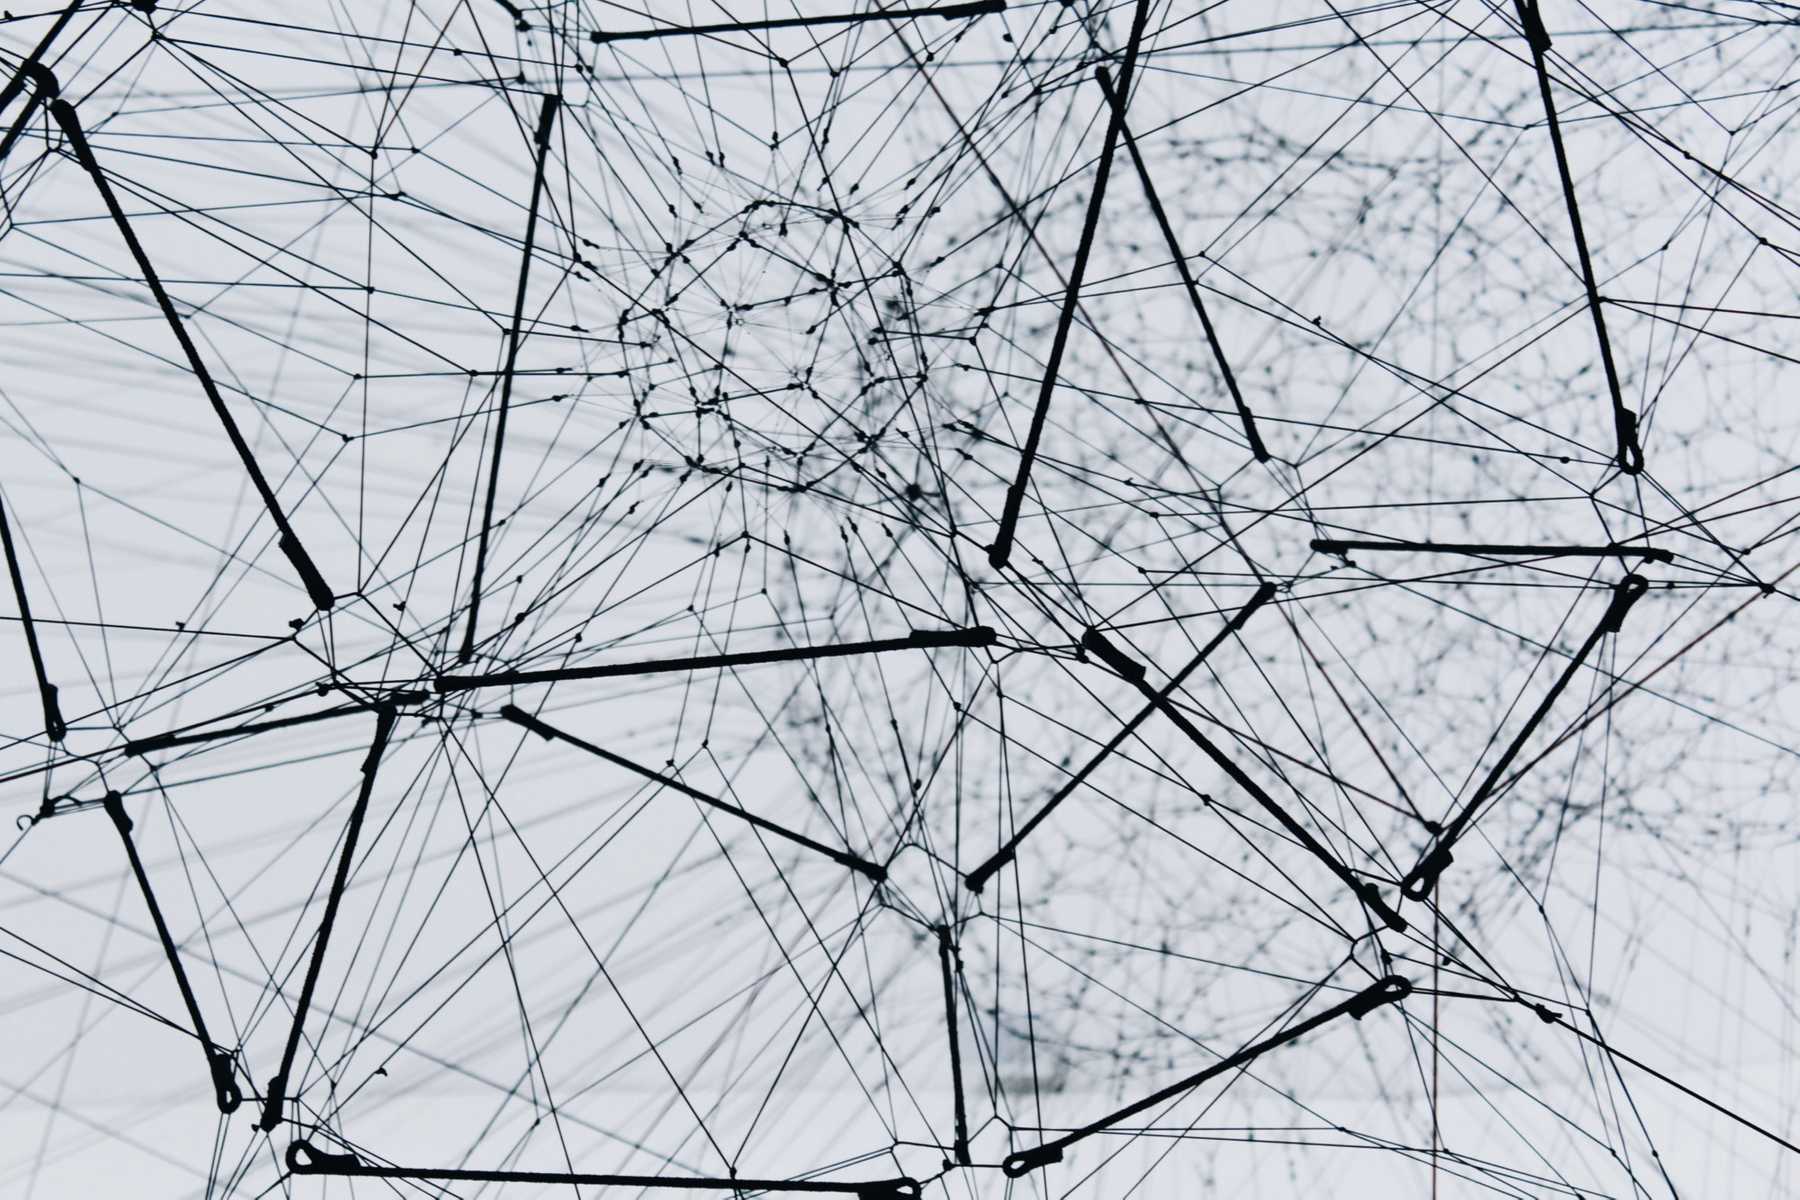 Image of mesh of metal strings